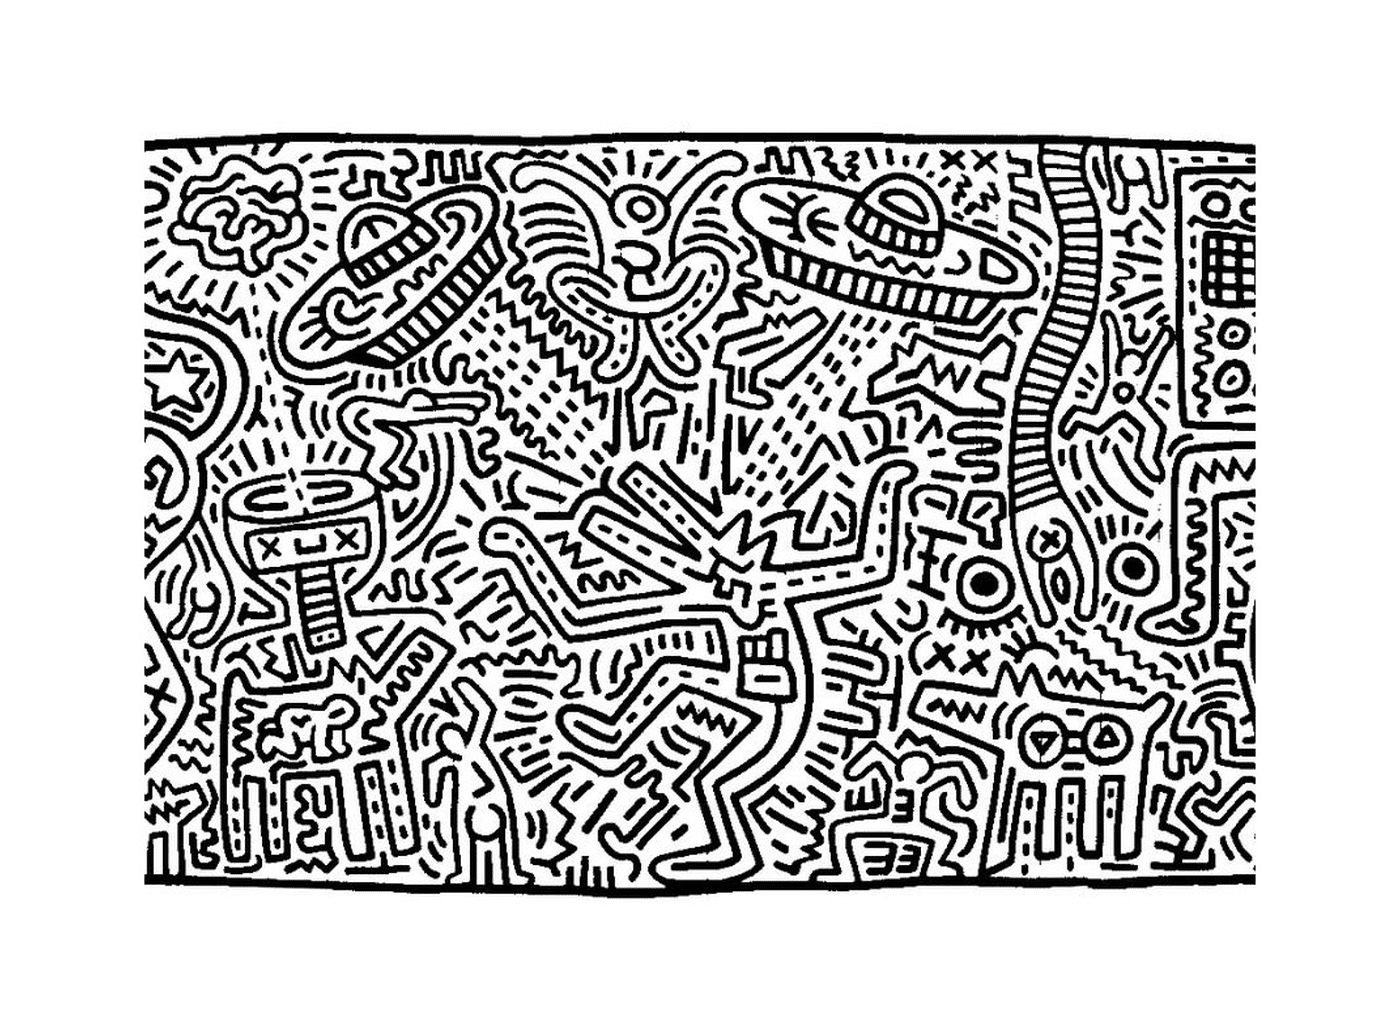  ein Kunstwerk von Keith Haring 